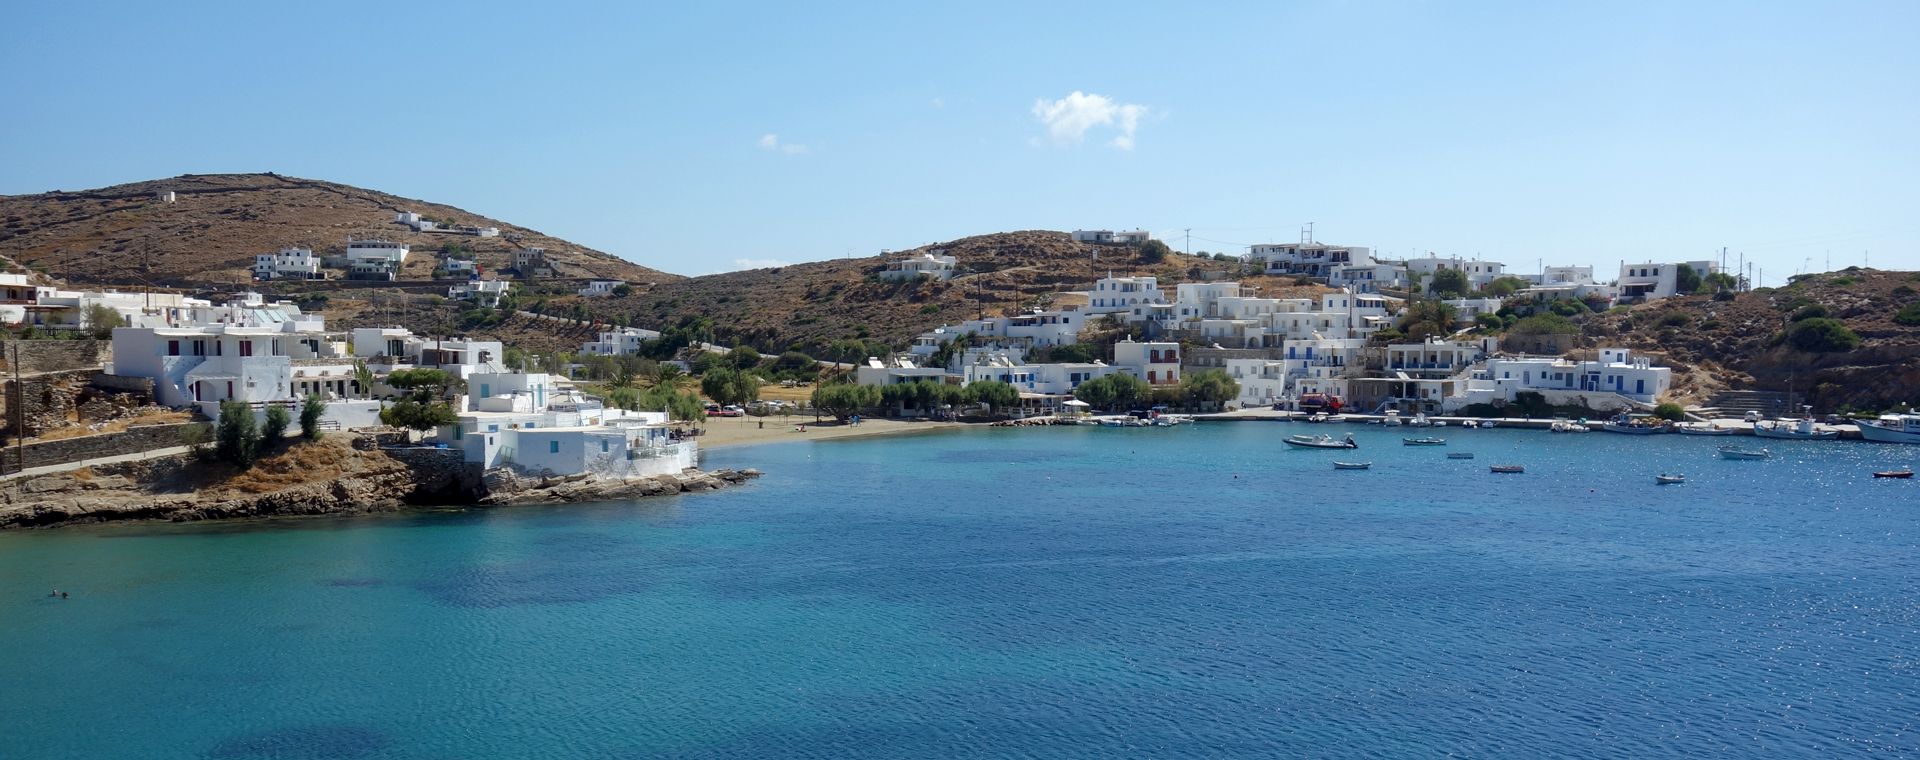 La paisible baie de Faros, île de Sifnos, Cyclades